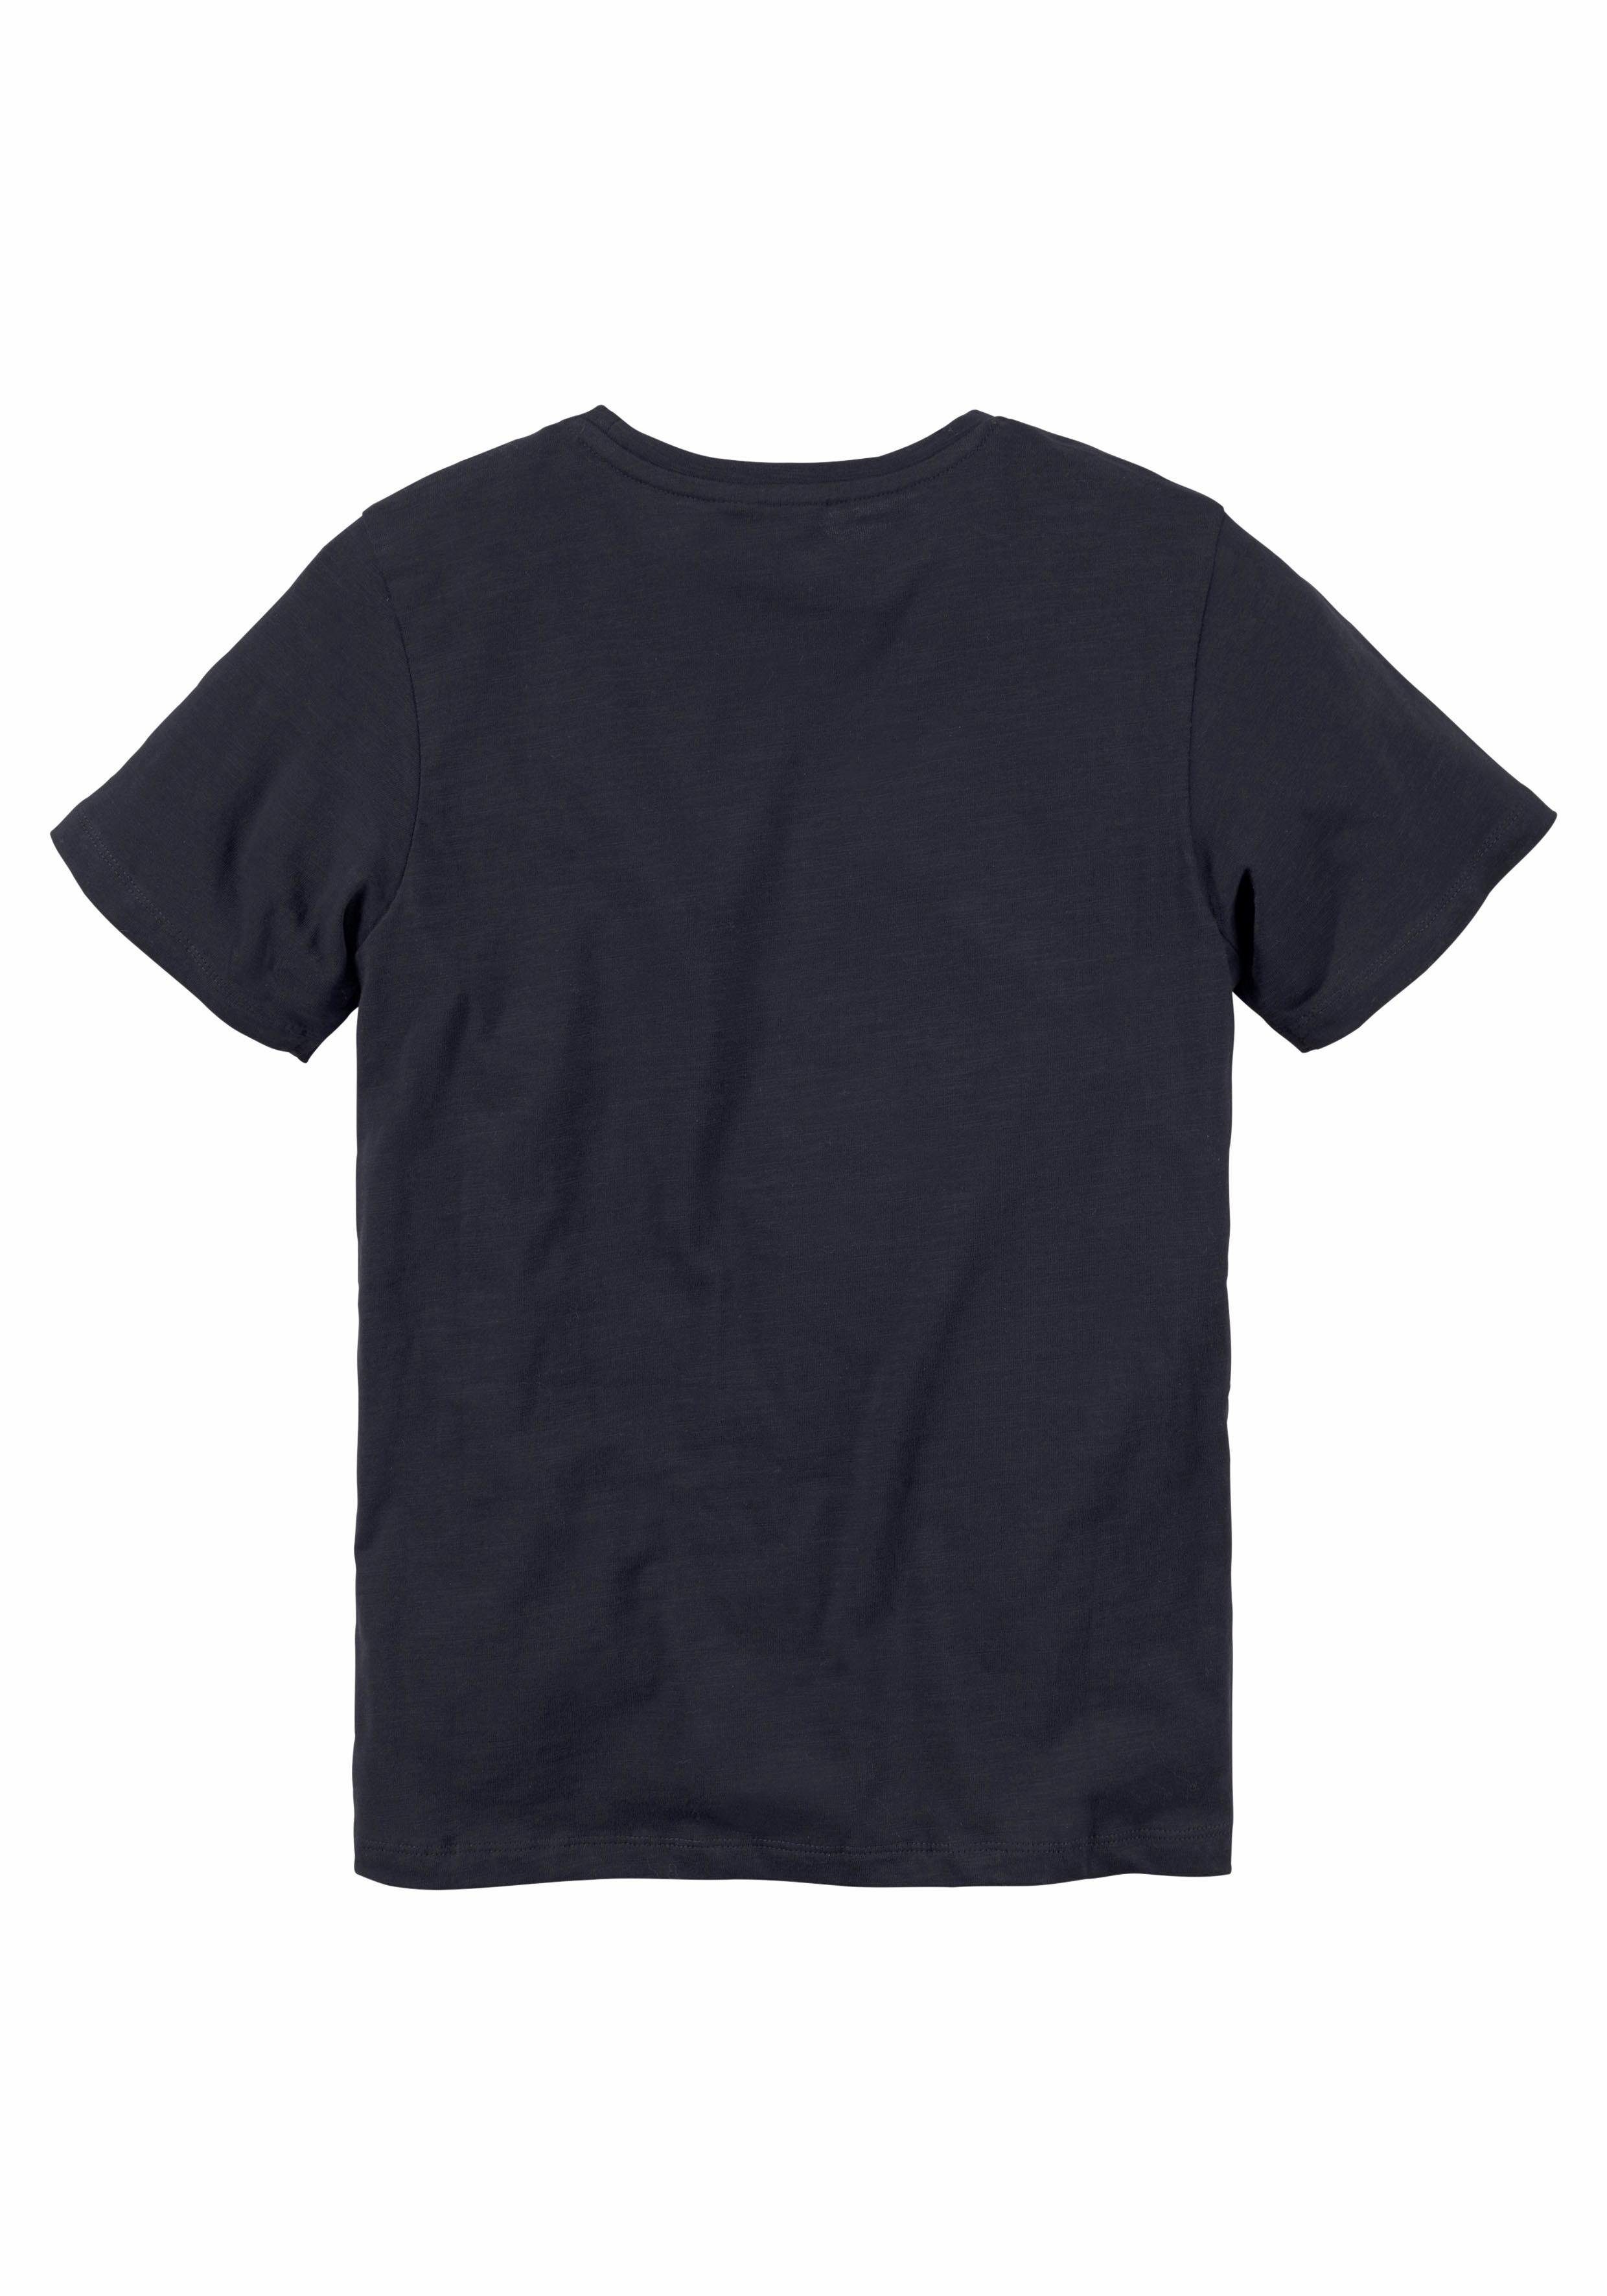 T-Shirt vorn Logodruck mit Chiemsee BASIC